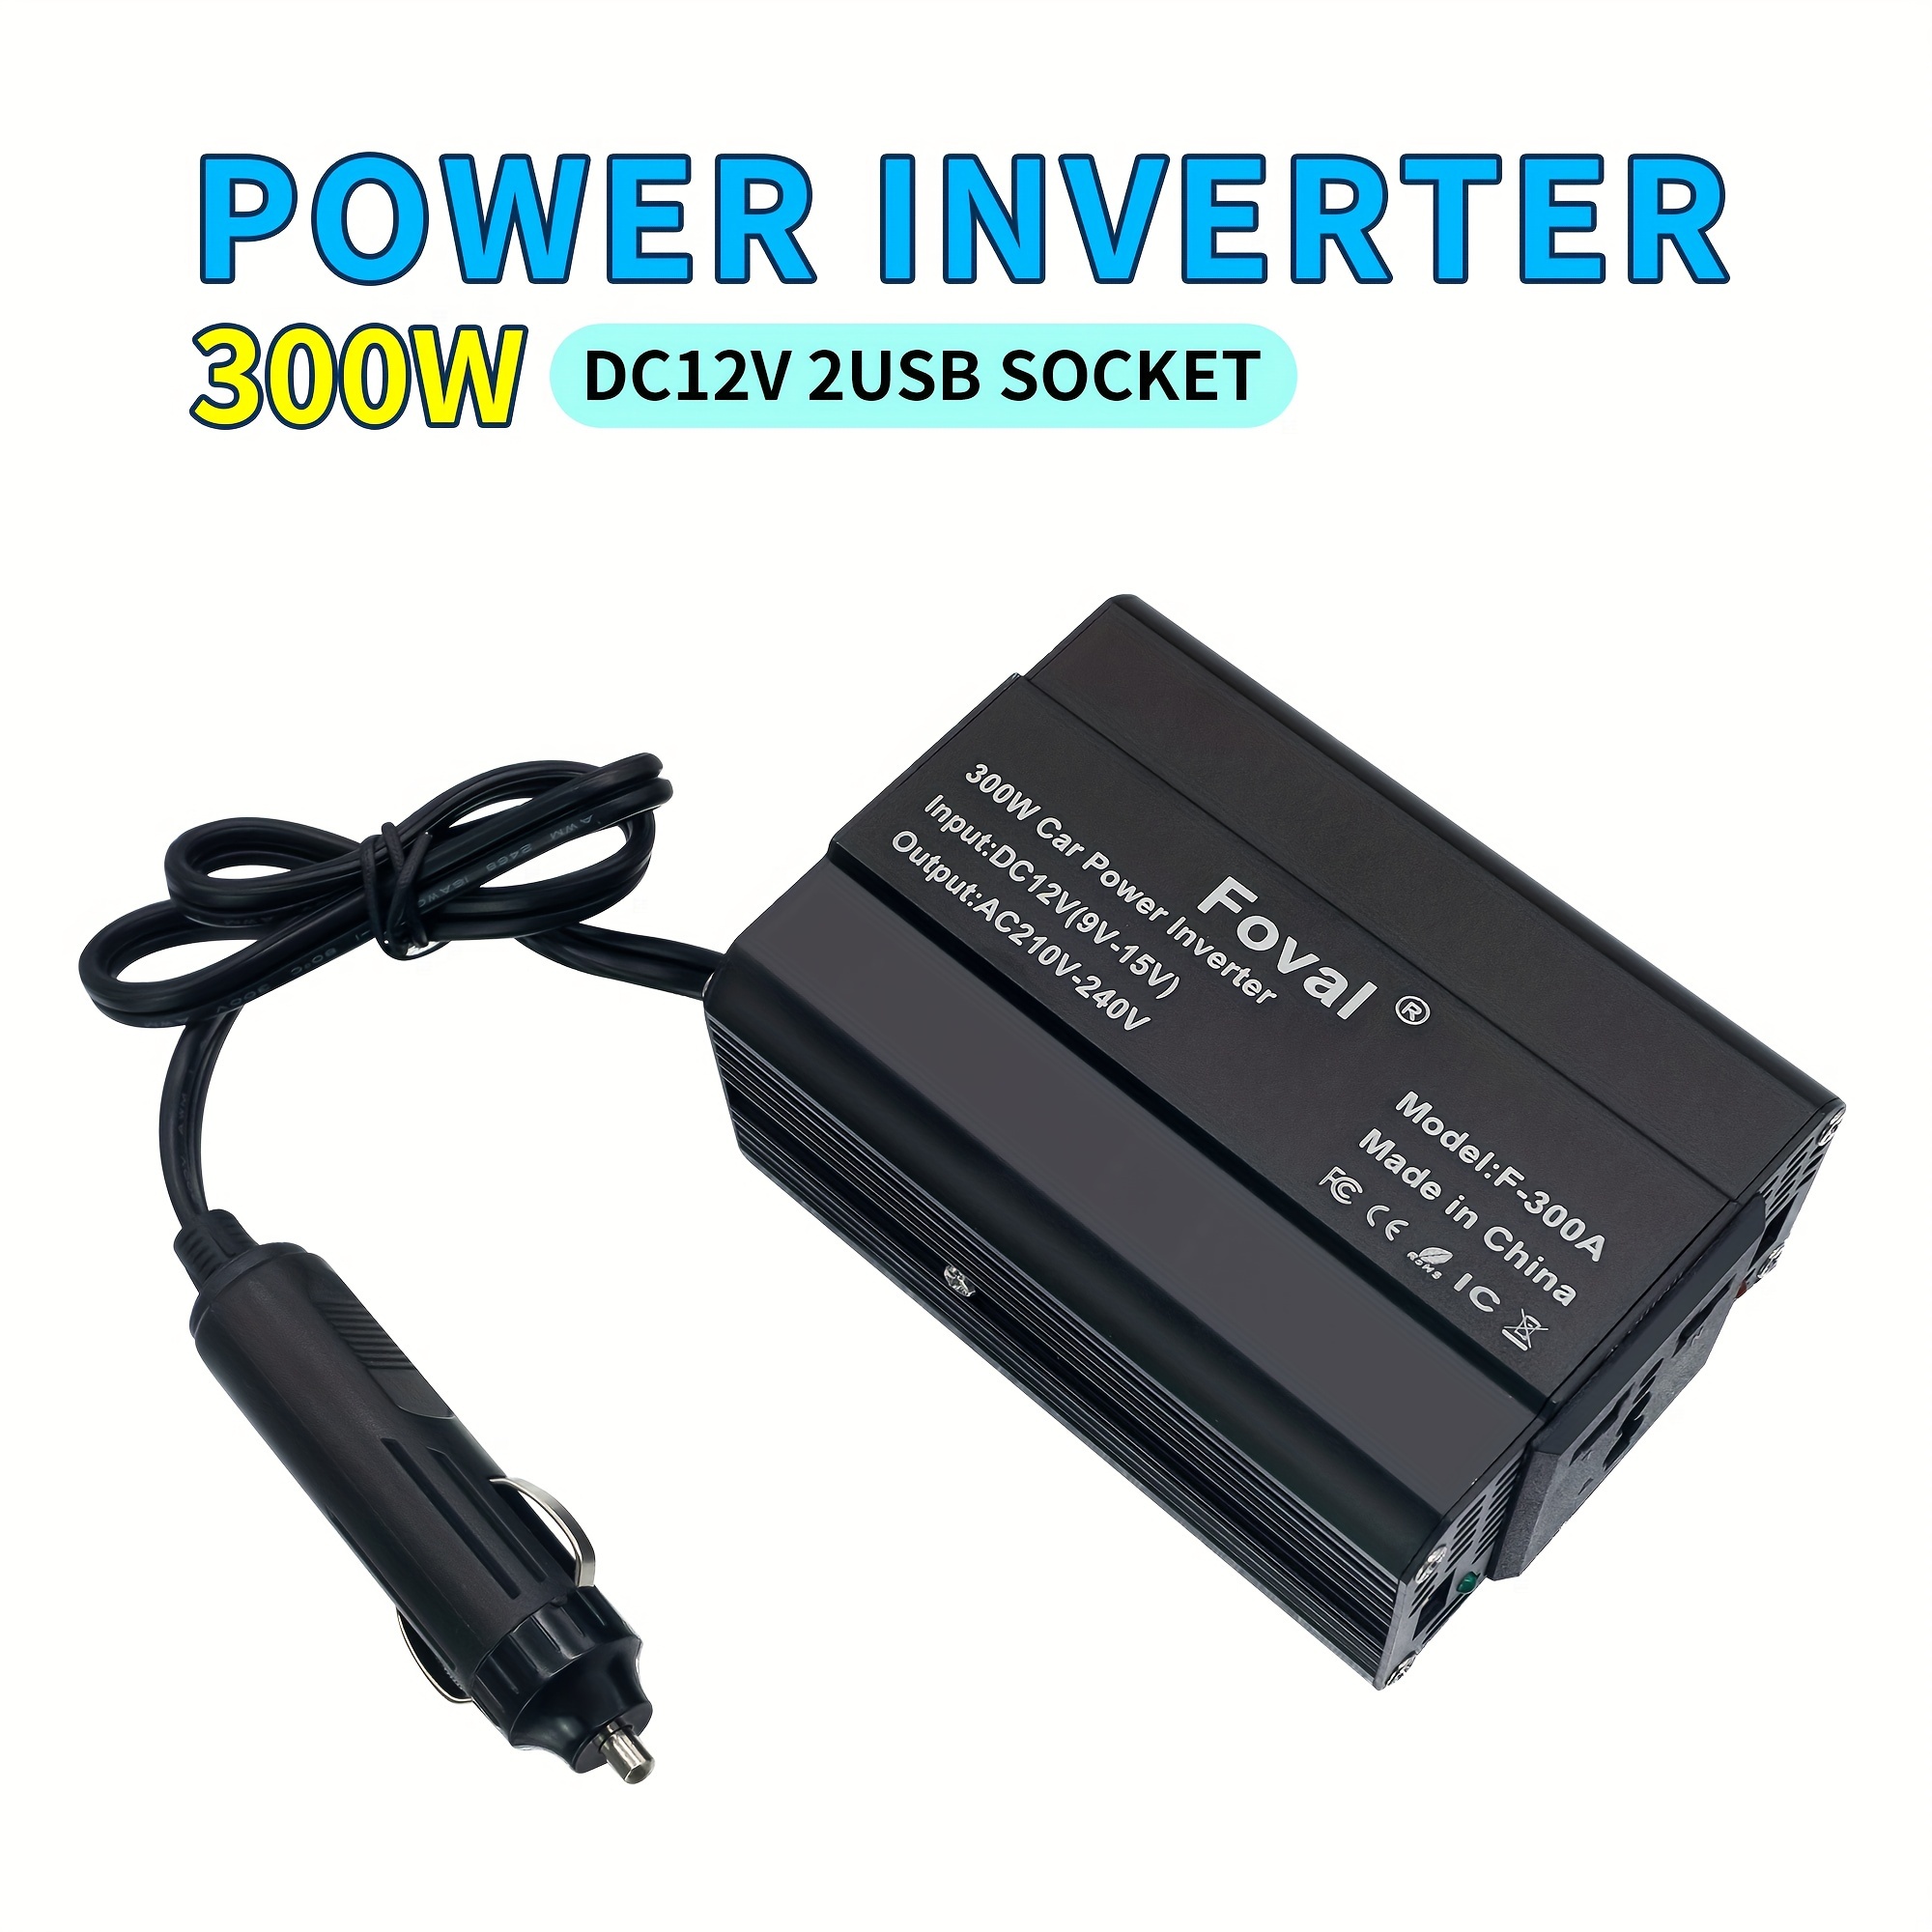  150W Power Inverter 12V DC to 110V AC Car Plug Adapter